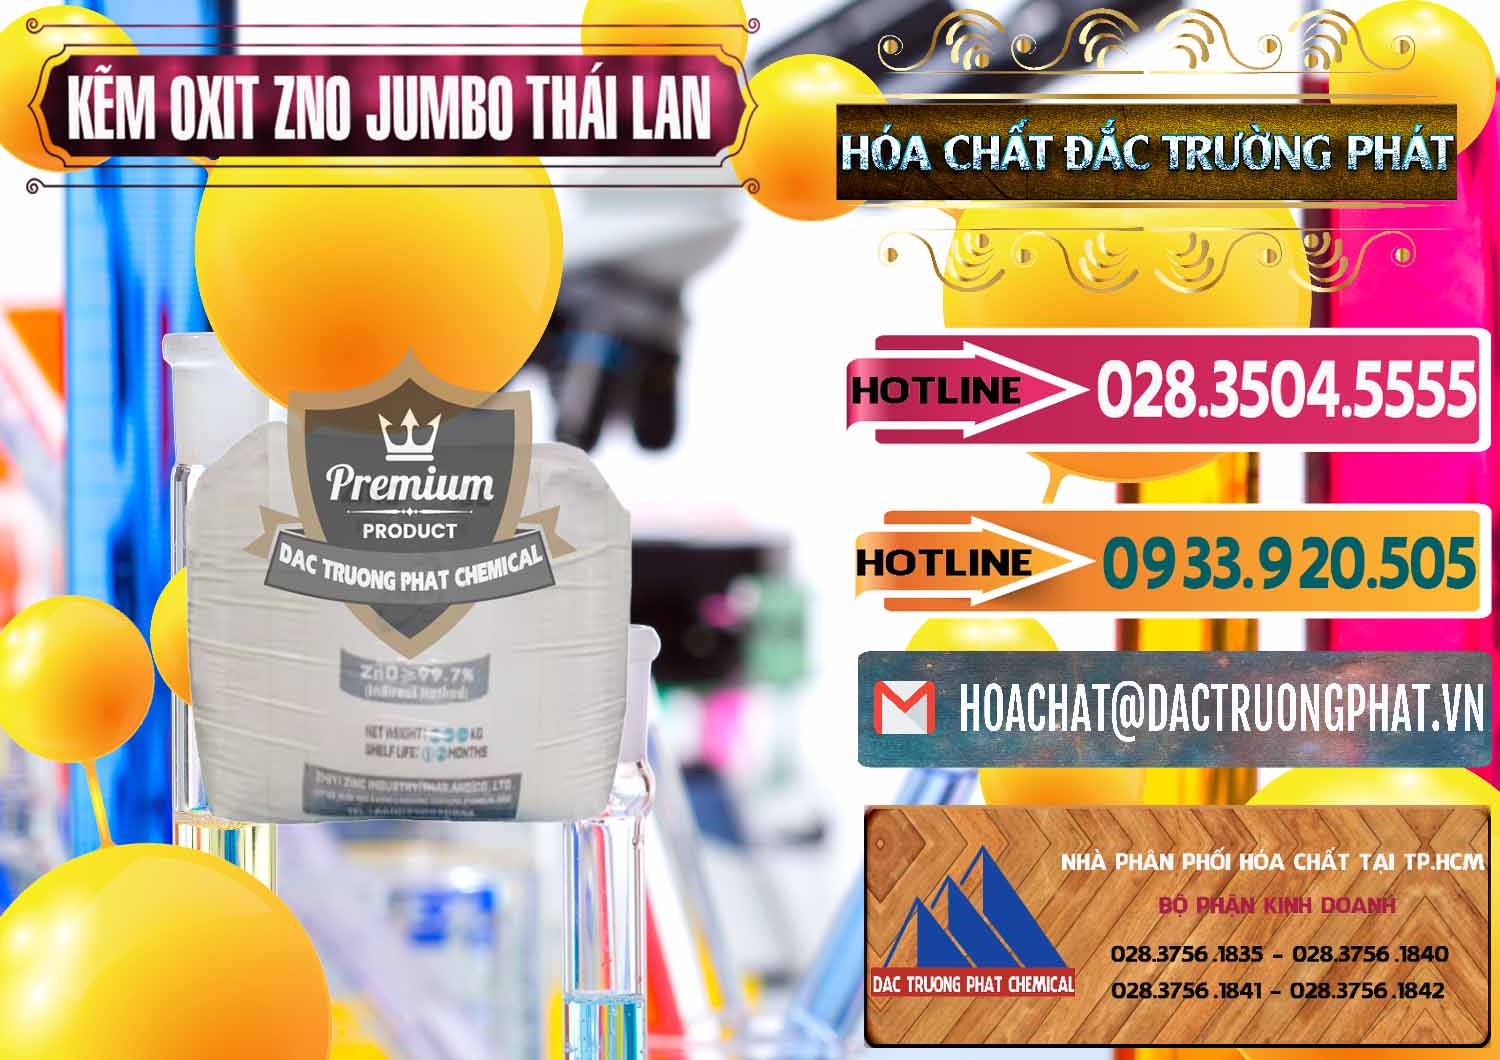 Bán & cung cấp Zinc Oxide - Bột Kẽm Oxit ZNO Jumbo Bành Thái Lan Thailand - 0370 - Kinh doanh ( phân phối ) hóa chất tại TP.HCM - dactruongphat.vn